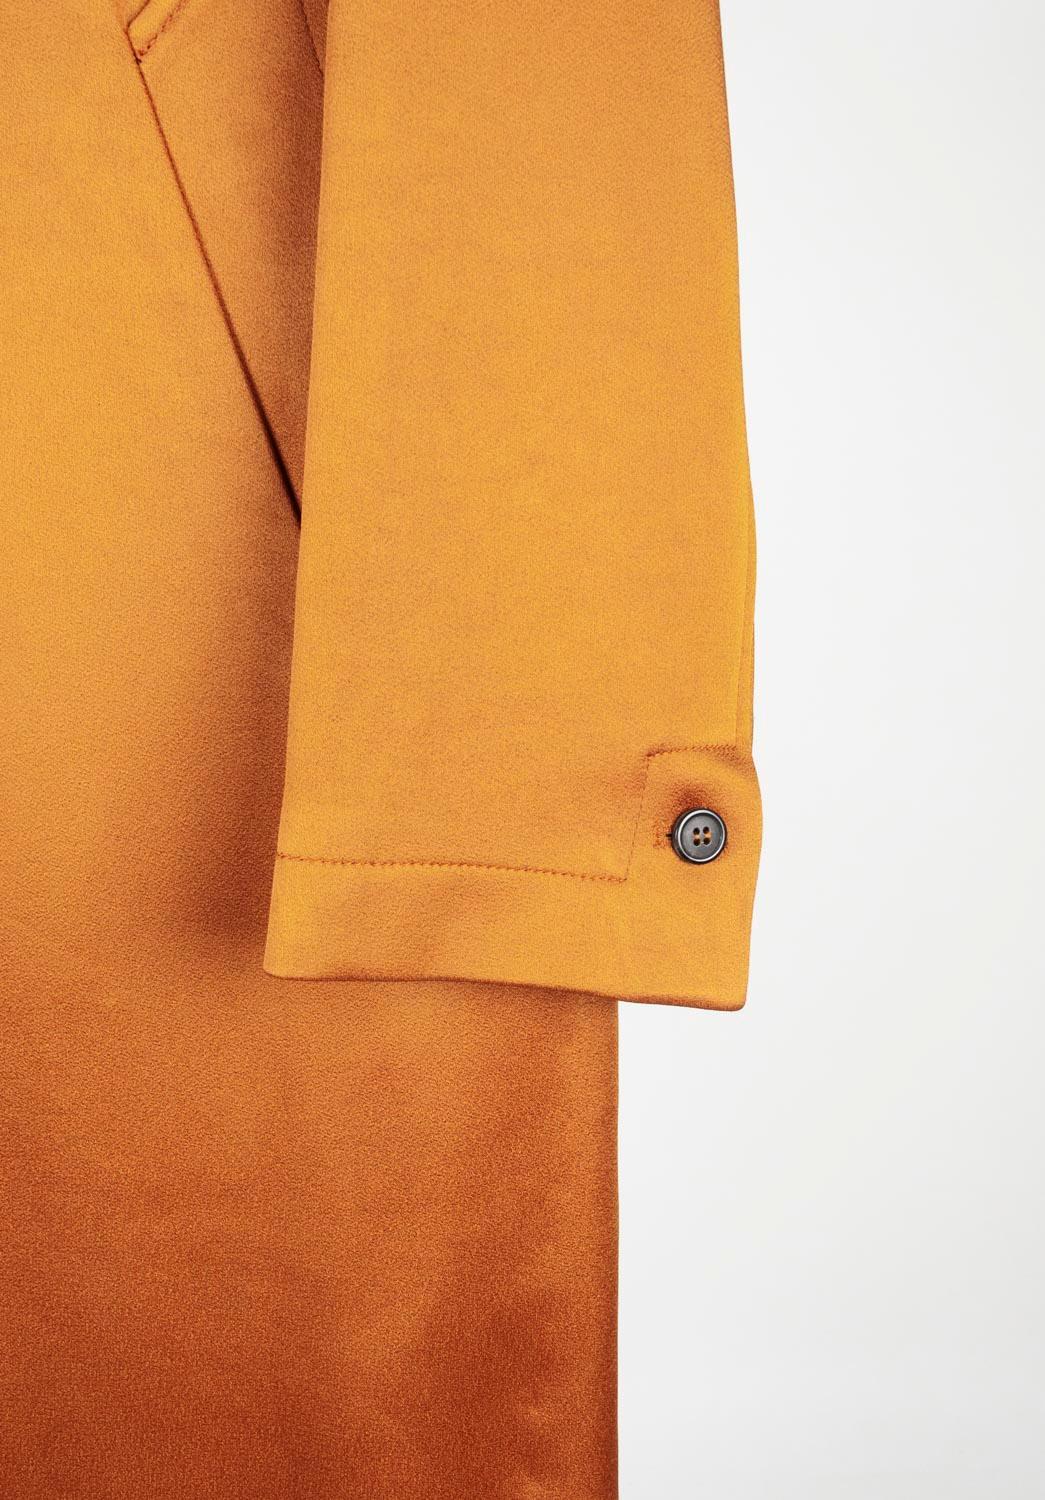 Ami Men Overcoat Coat Size 46ITA, (Medium) S616 For Sale 5